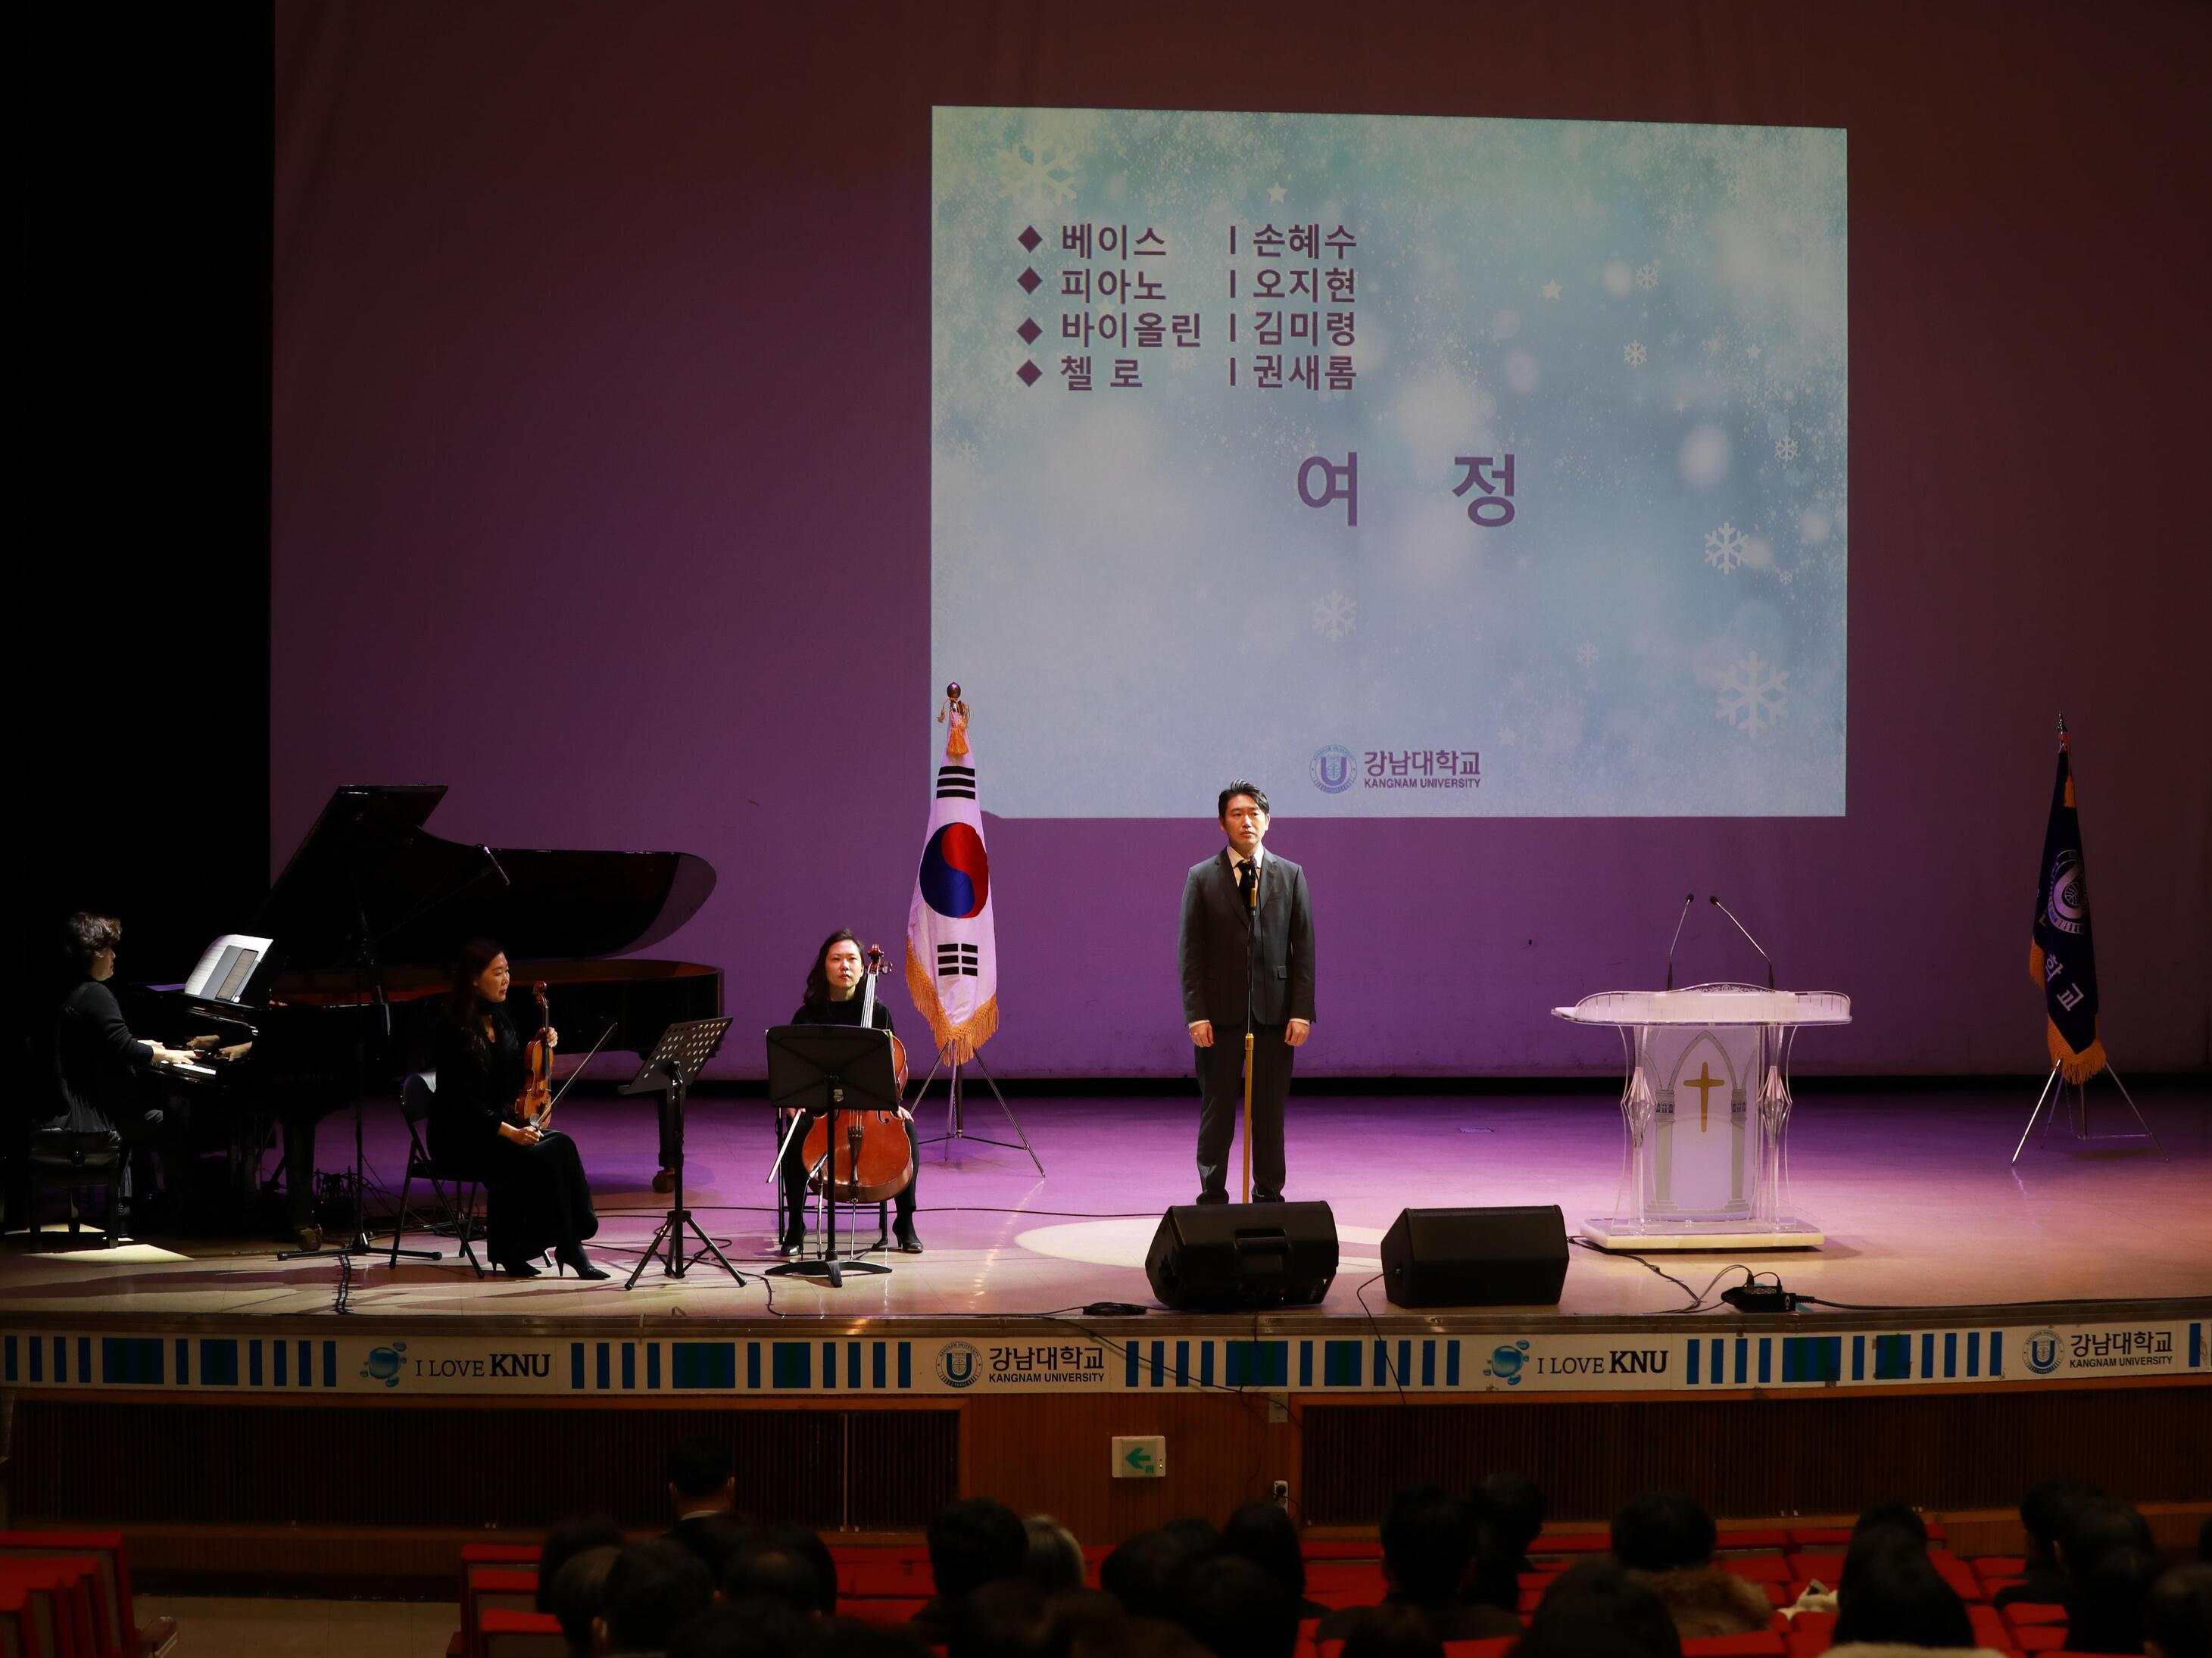 배이스 손혜수 교수, 피아노 오지현 교수, 바이올린 김미령 교수, 첼로 권새롬 교수의 축하공연 사진입니다.